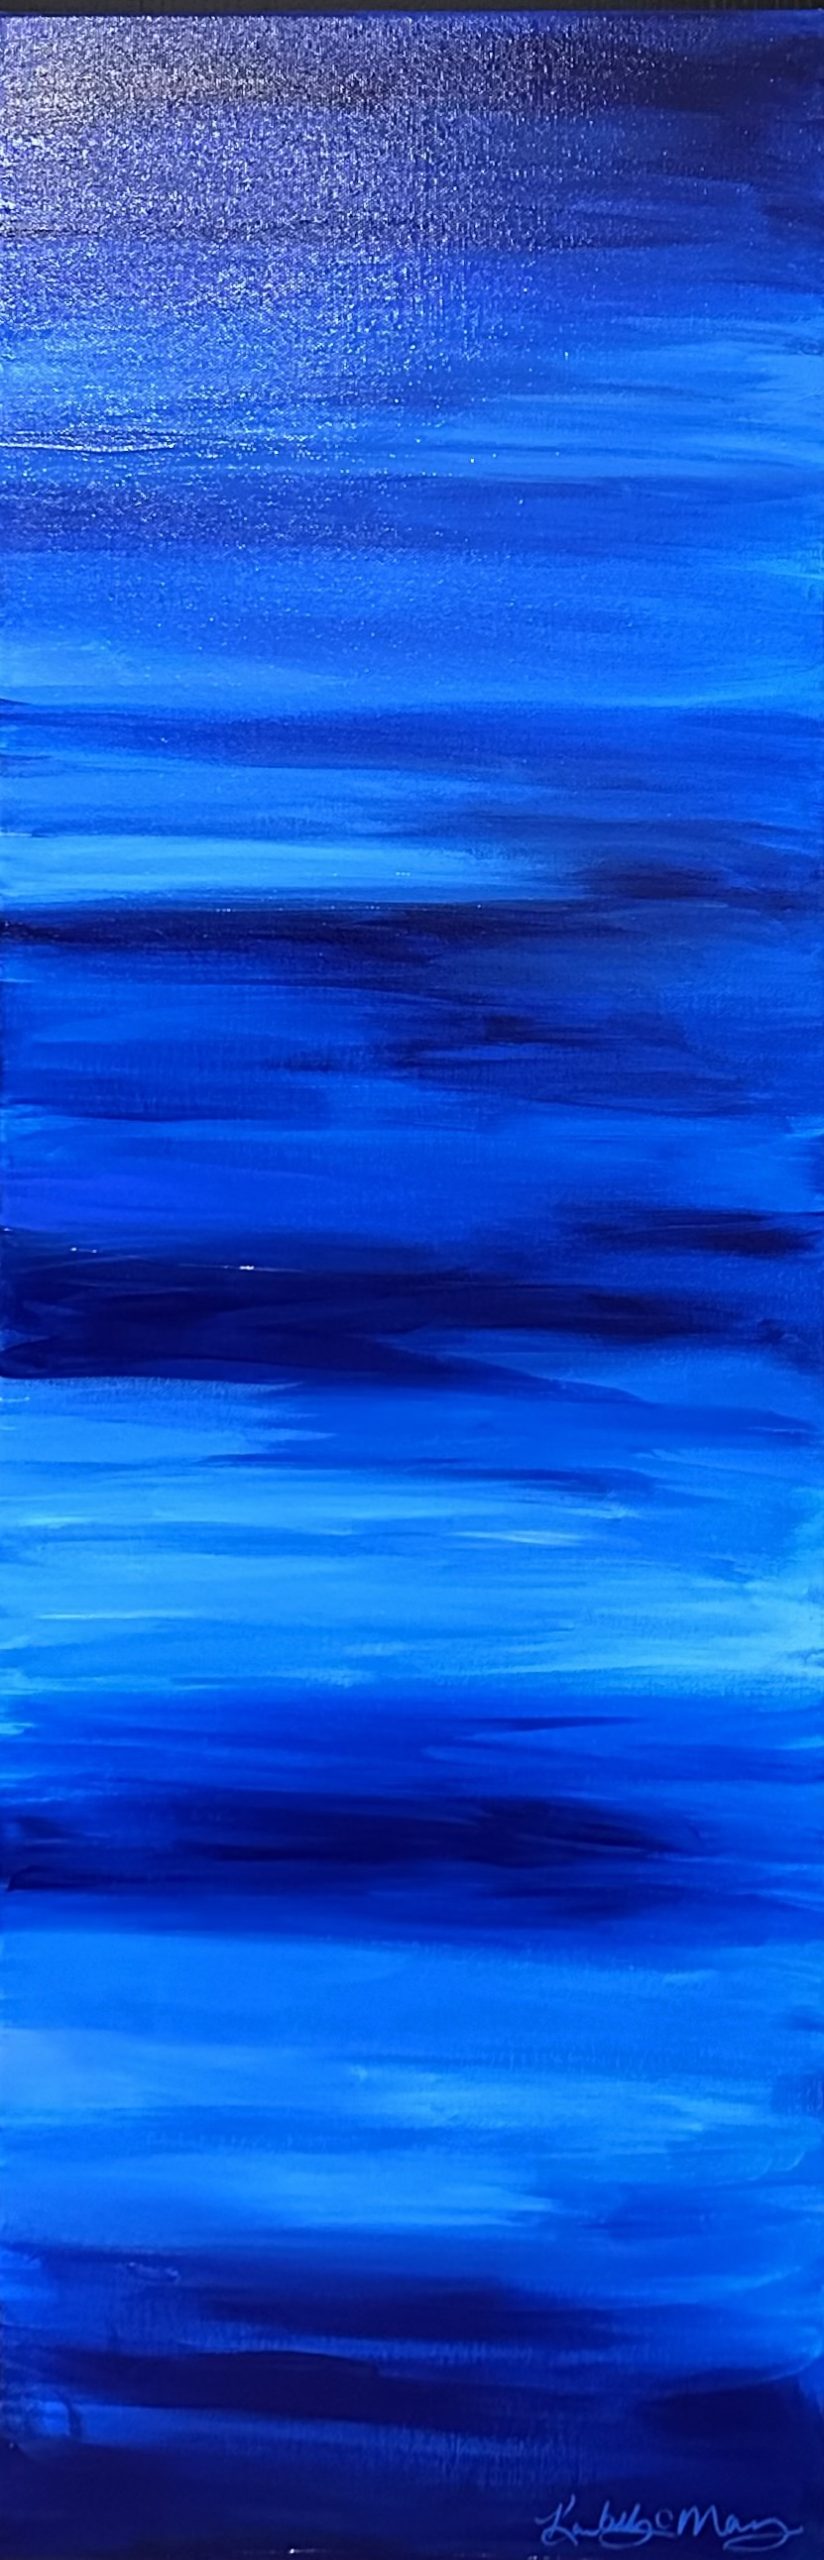 Blue Horizon #2 - Kimberly Marney